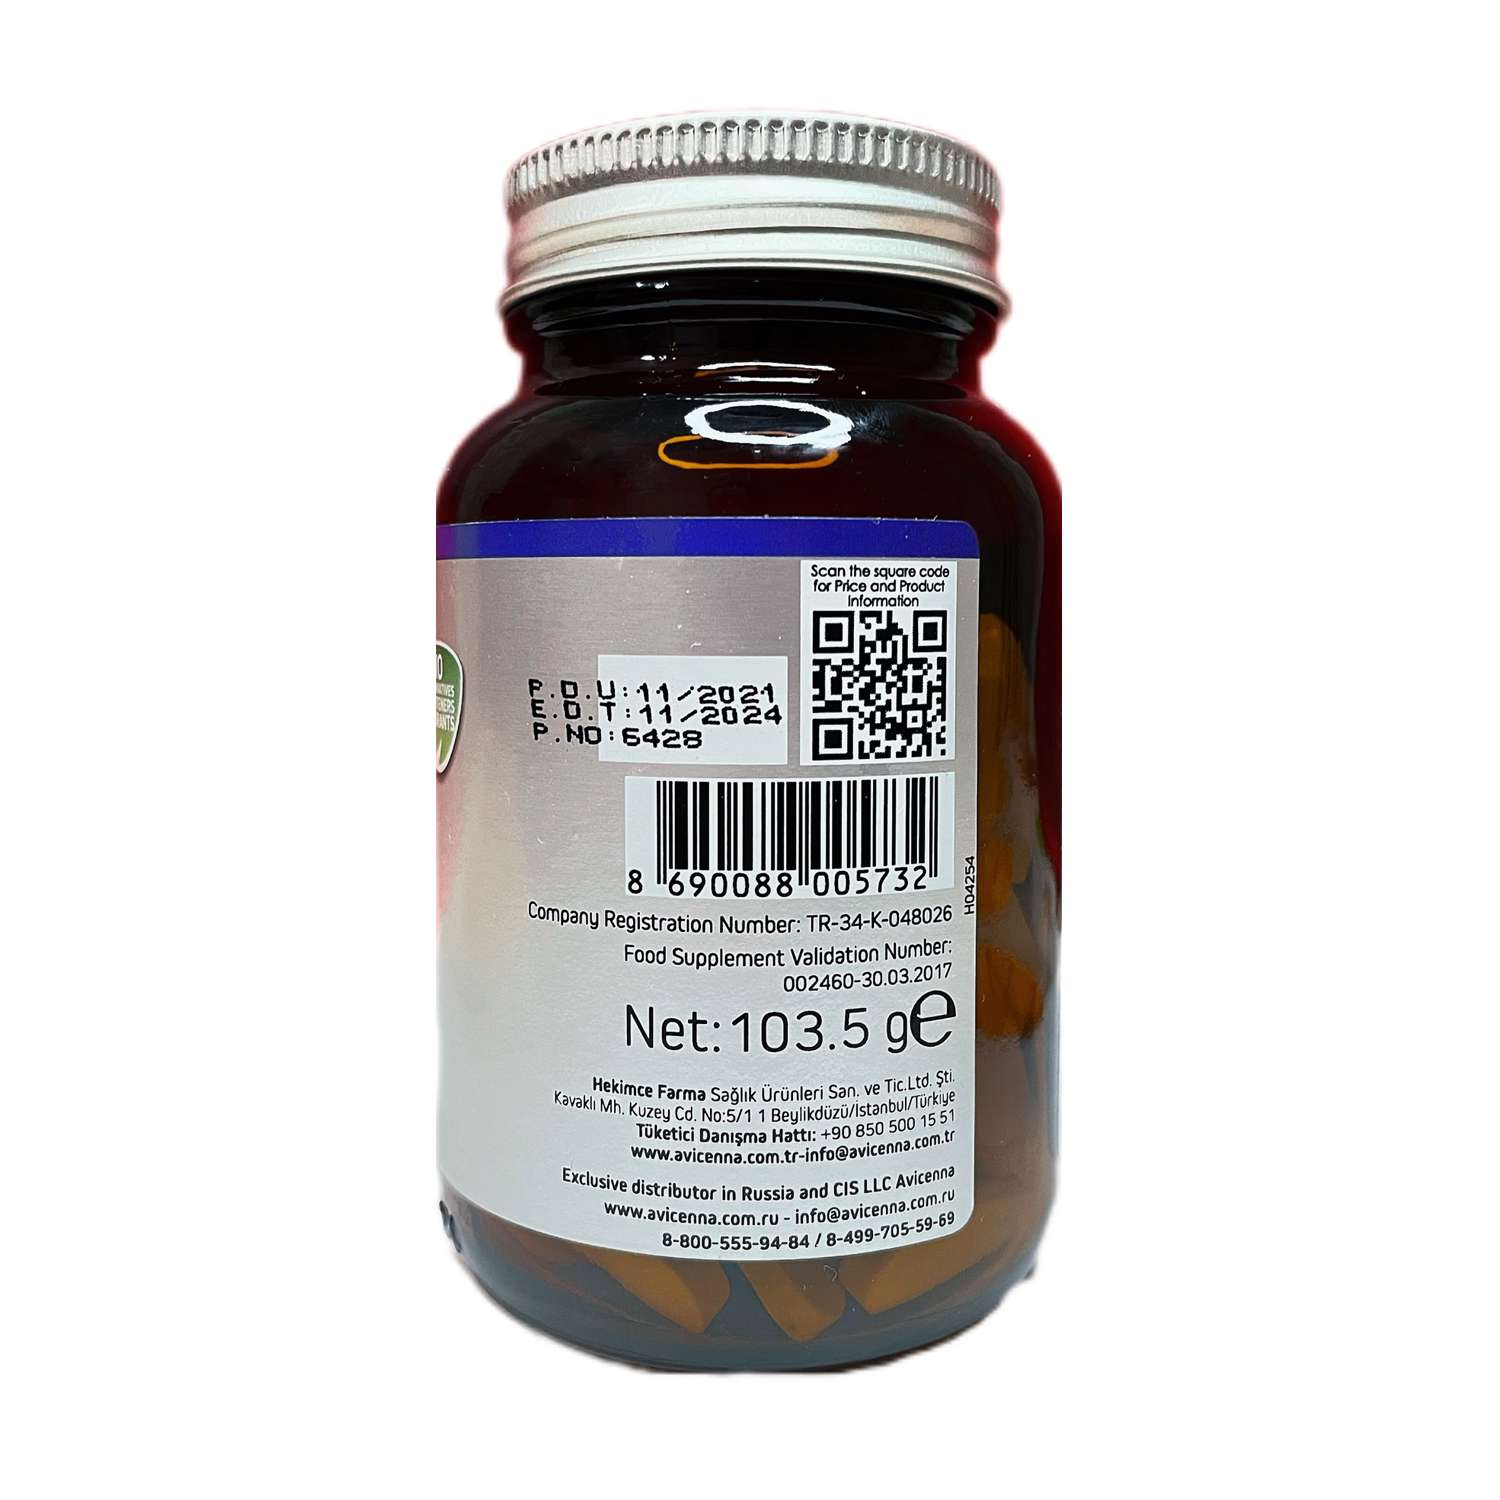 Биологически активная добавка Avicenna Glucosamine chondroitin MSM hyaluronic acid 60таблеток - фото 2